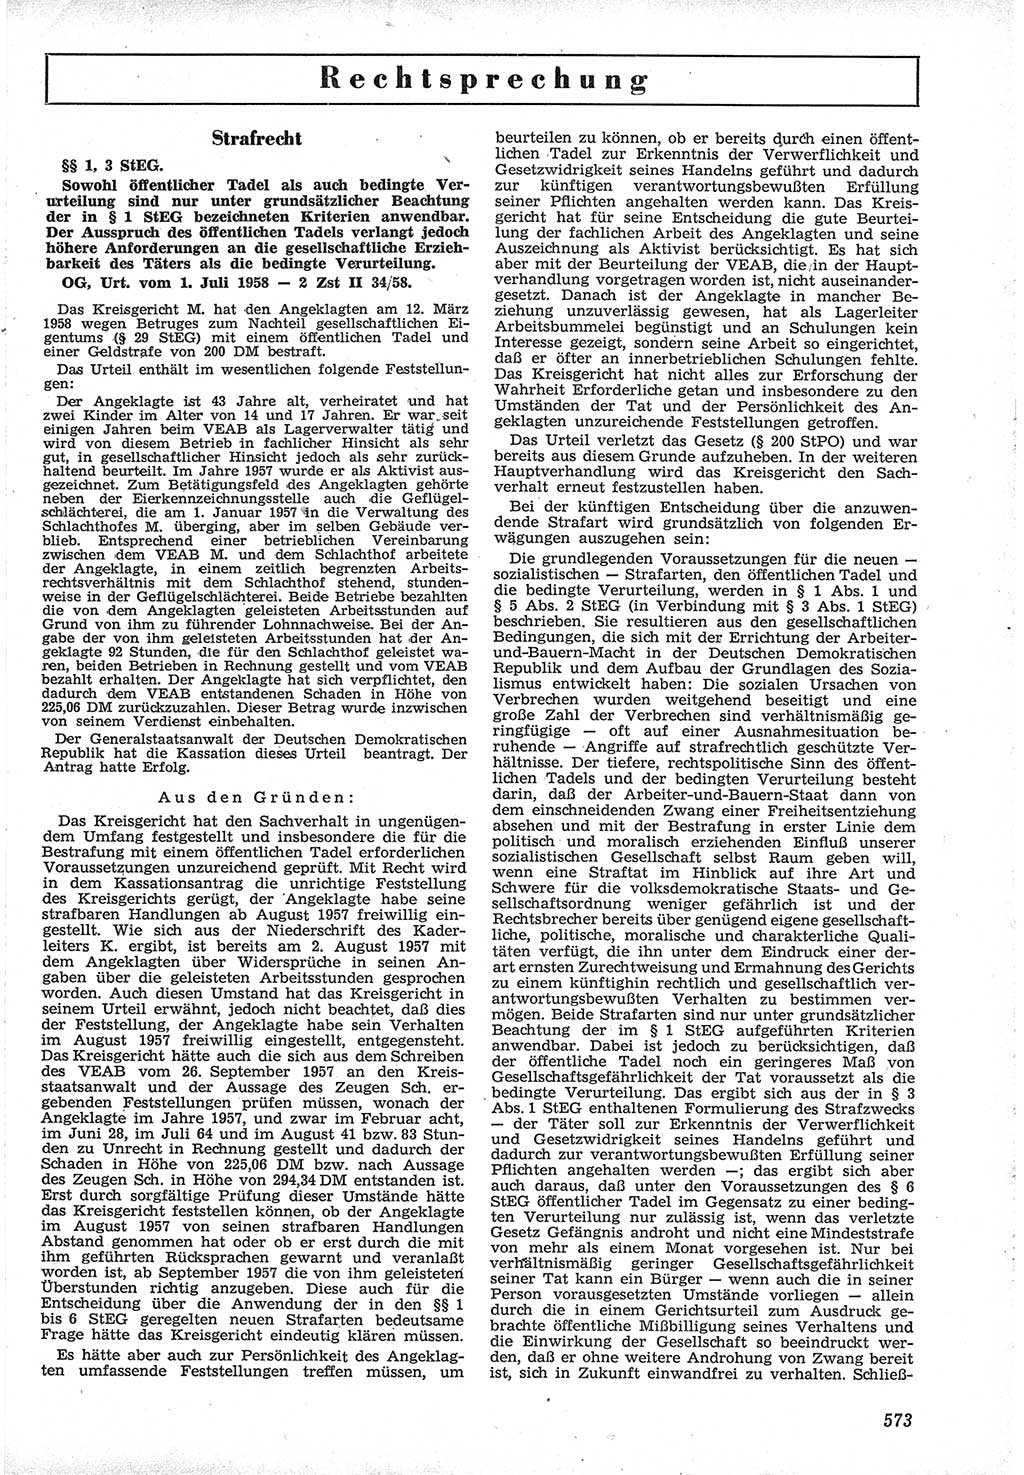 Neue Justiz (NJ), Zeitschrift für Recht und Rechtswissenschaft [Deutsche Demokratische Republik (DDR)], 12. Jahrgang 1958, Seite 573 (NJ DDR 1958, S. 573)